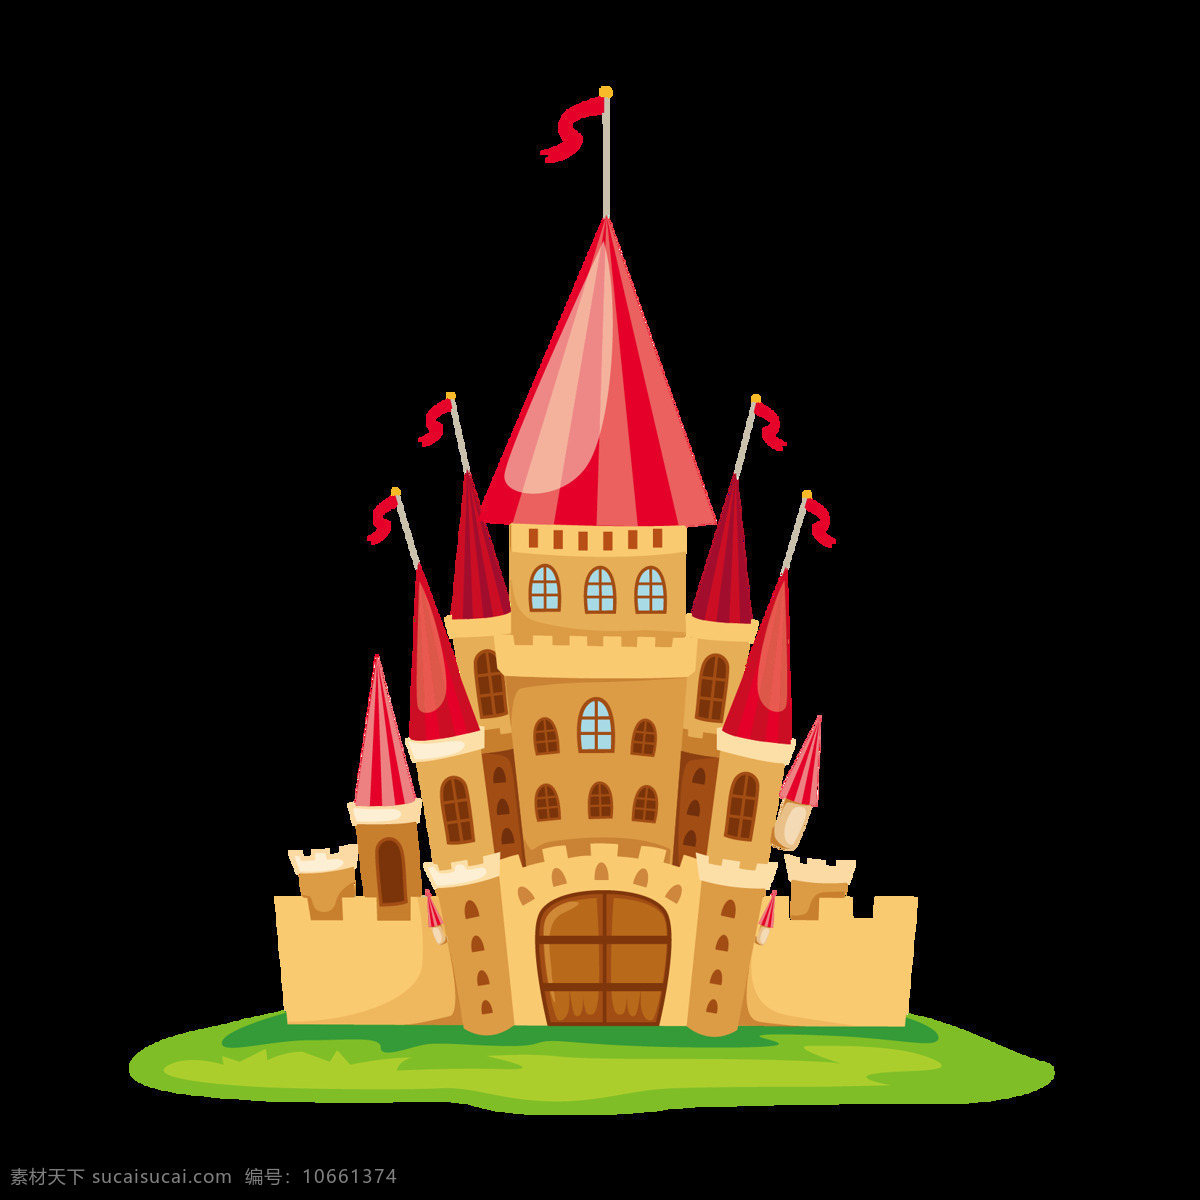 卡通 欧式 城堡 图案 元素 建筑素材 欧式城堡 彩色城堡 白色 房子大全 房子素材 高楼 卡通房屋 建筑家居